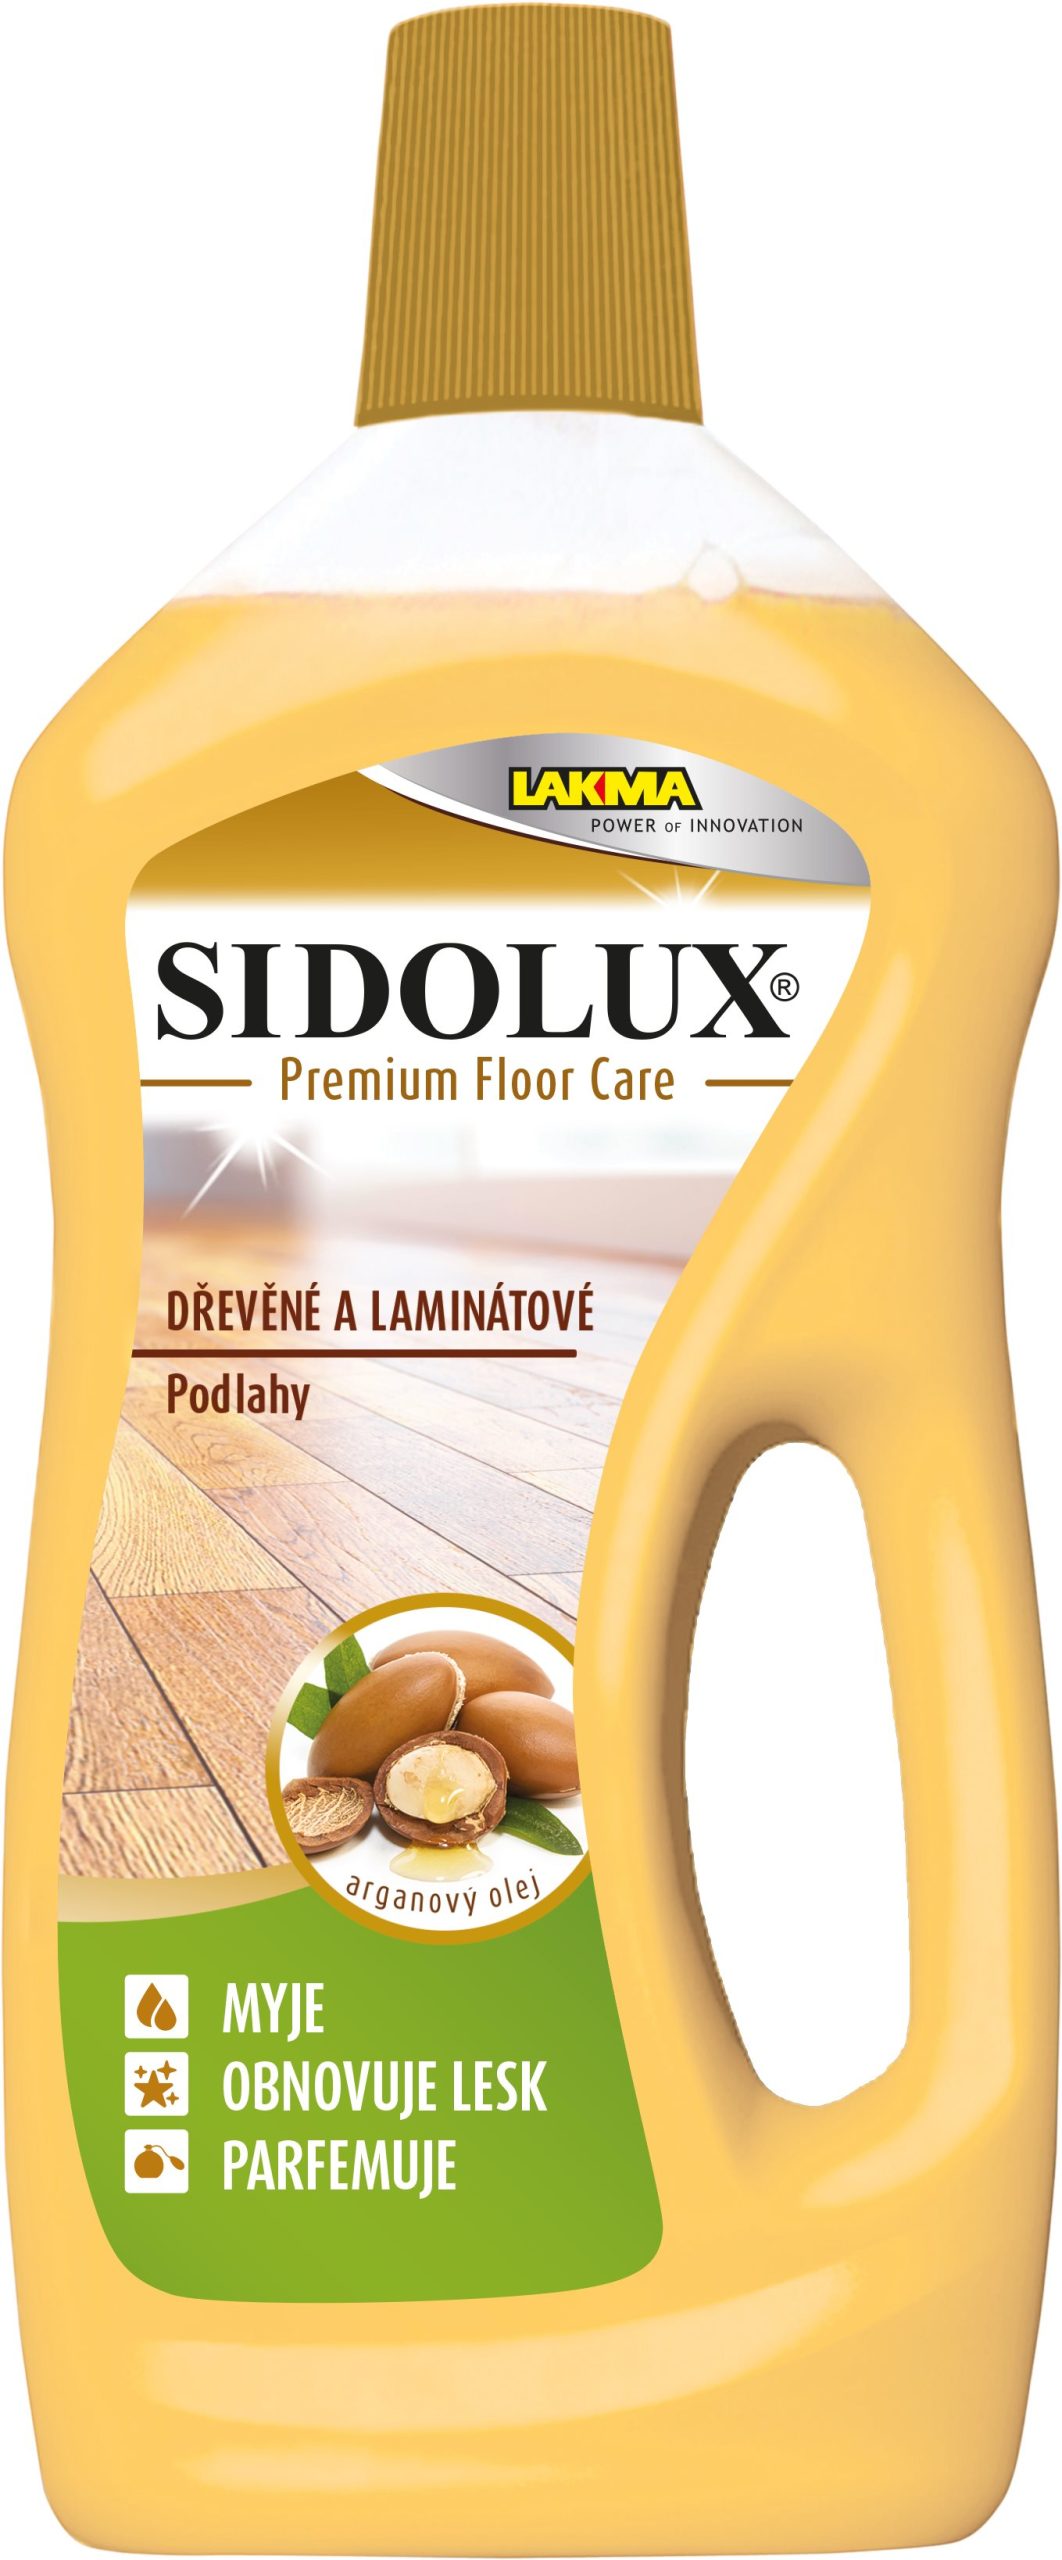 Padlótisztító SIDOLUX Premium Floor Care argánolajjal